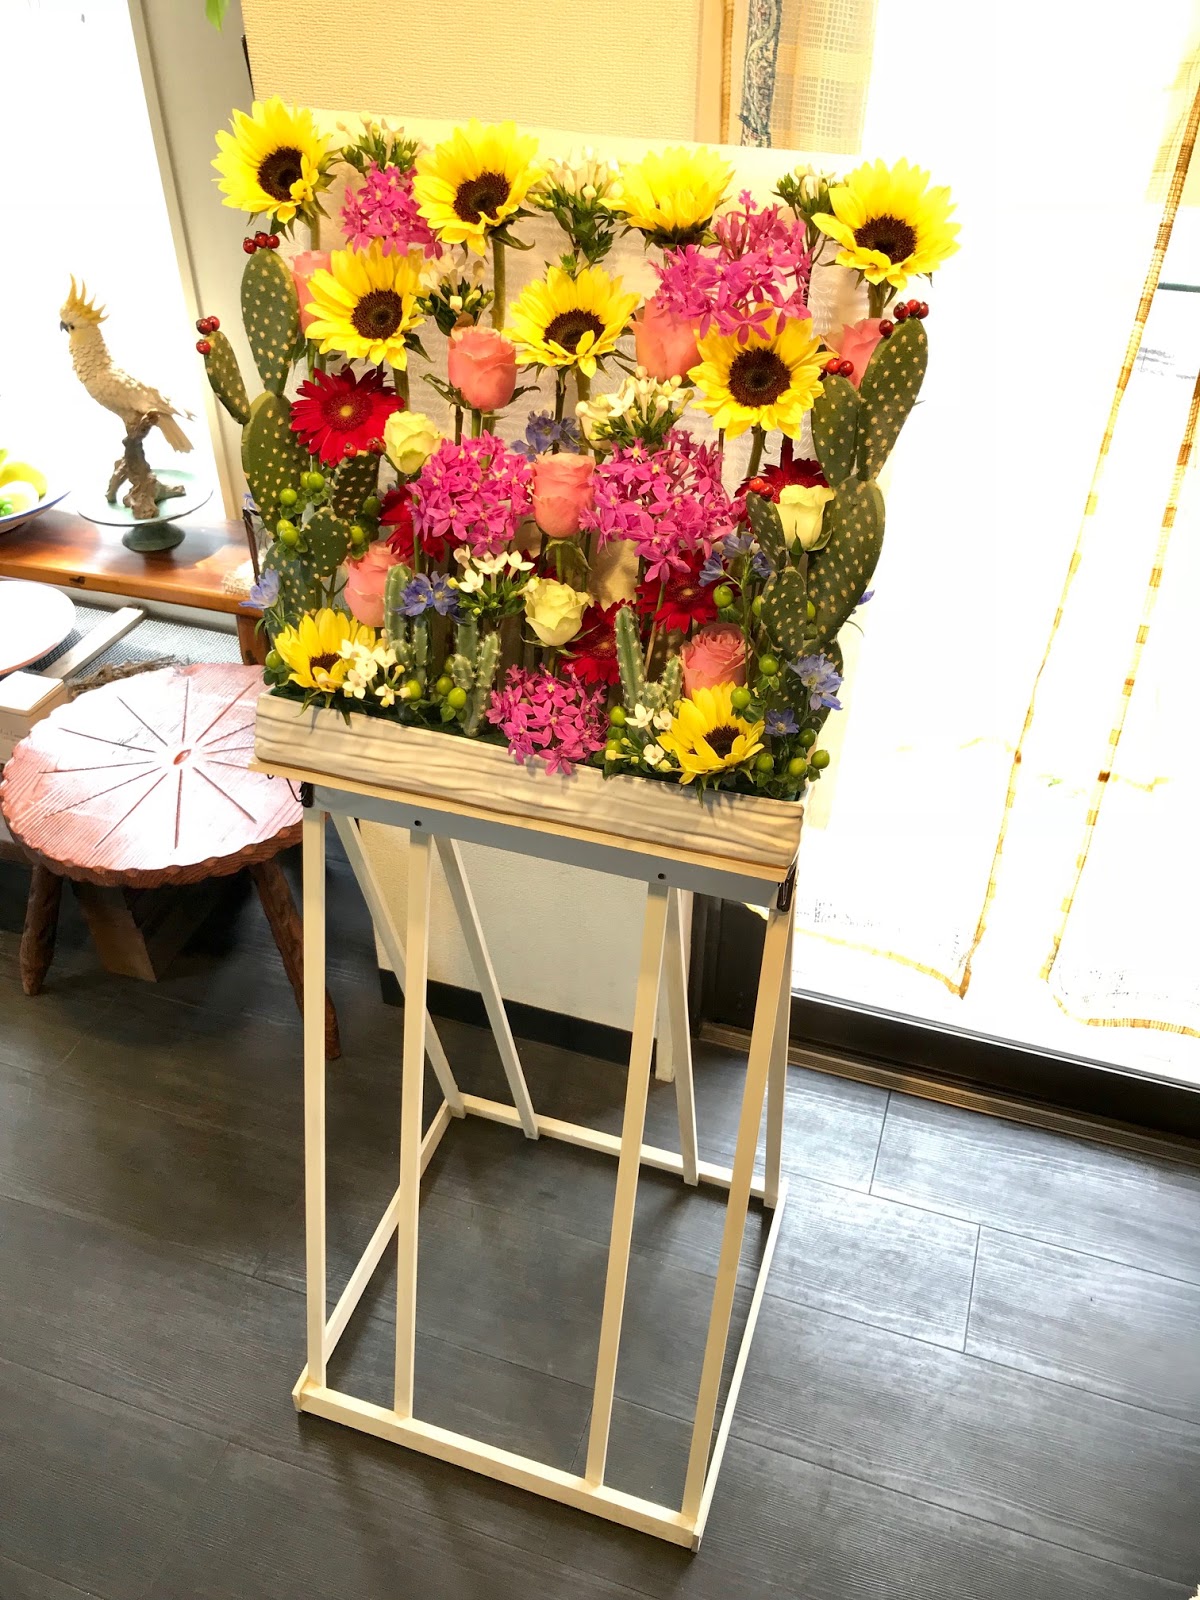 葉織 Haori Flowers 新宿区のお花屋さん 橋本シャーンいろいろ絵画展 フラワーギフト